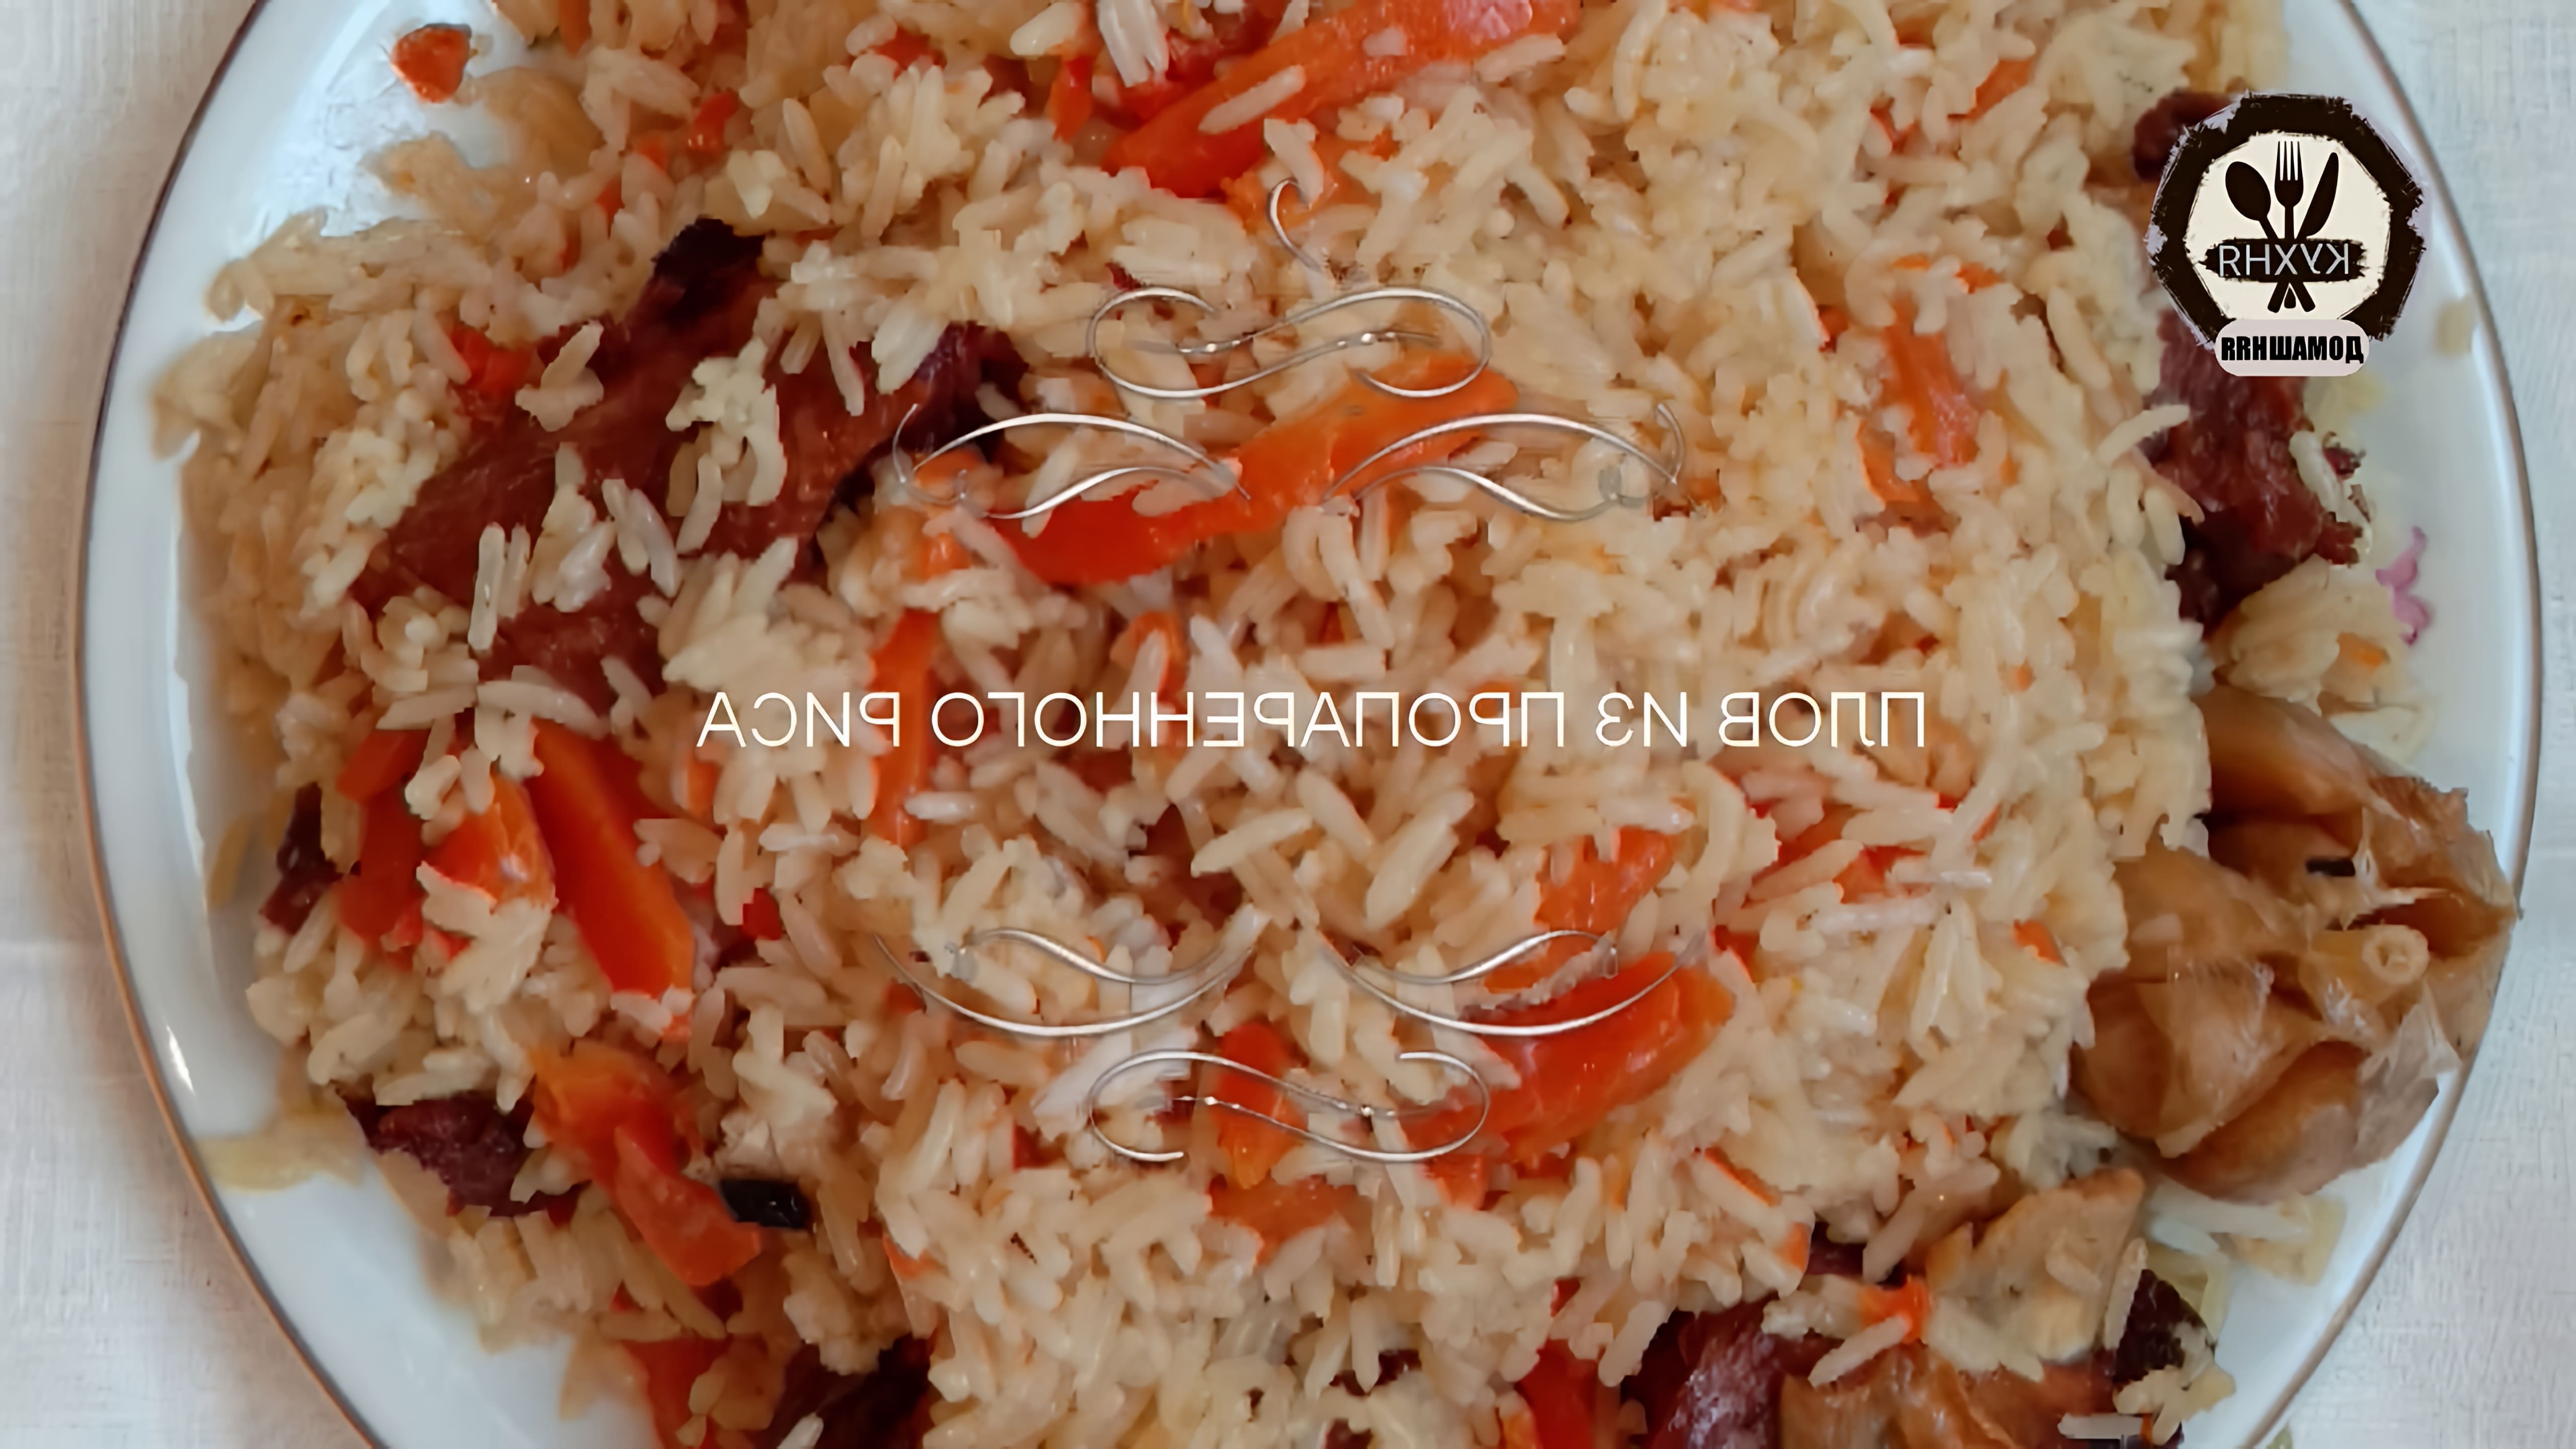 В этом видео демонстрируется процесс приготовления плова из пропаренного риса